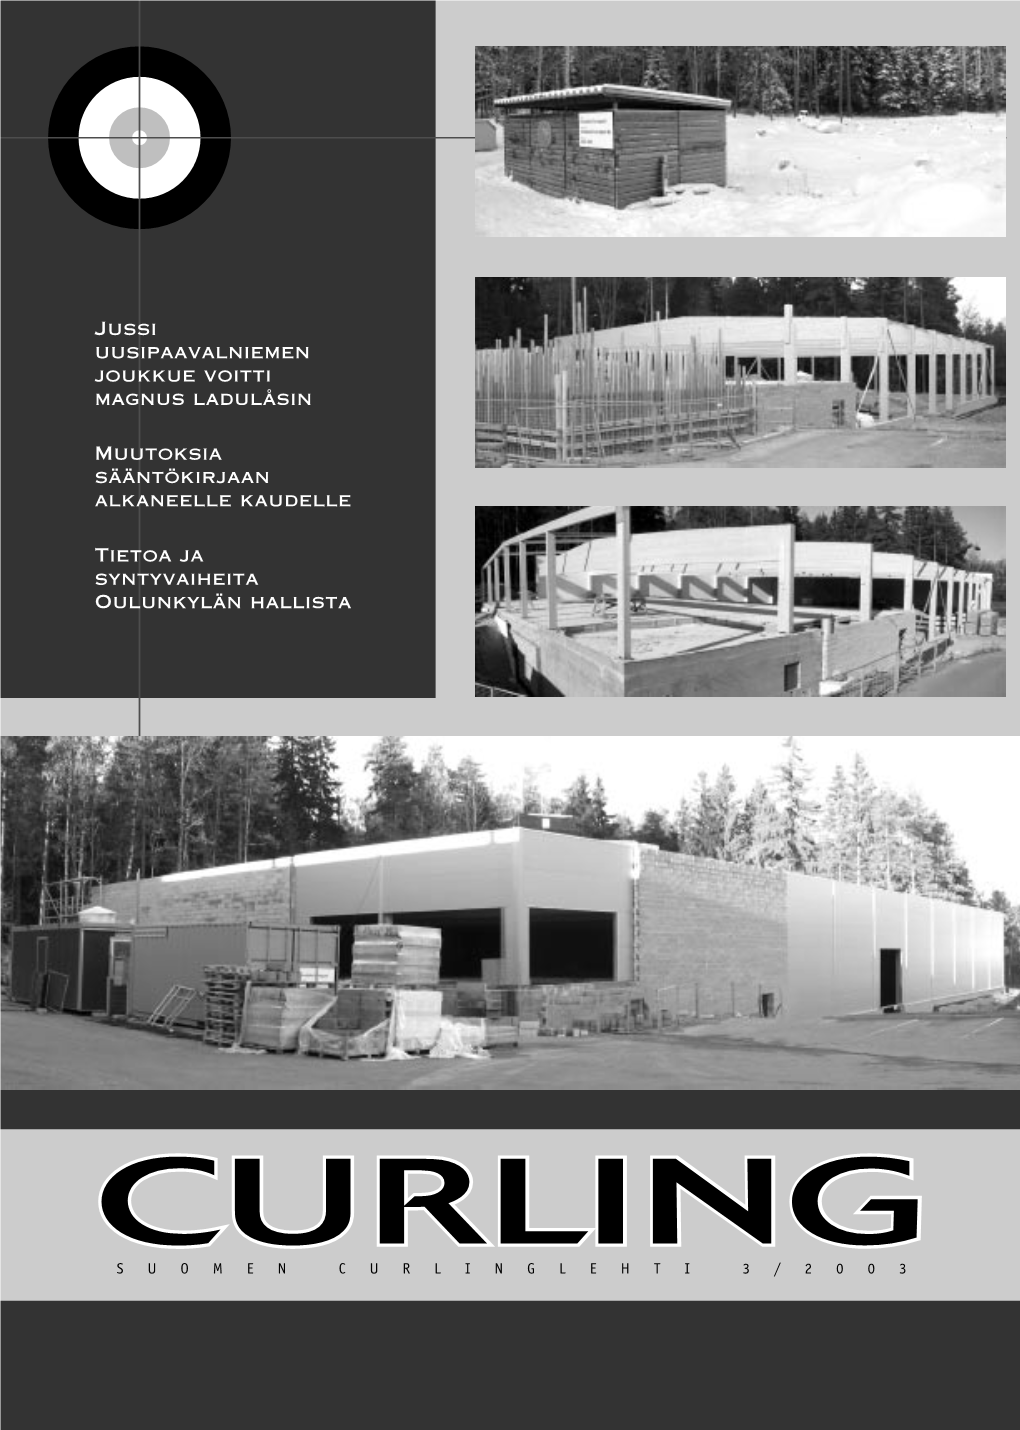 Curlinglehti 0303 1.Indd